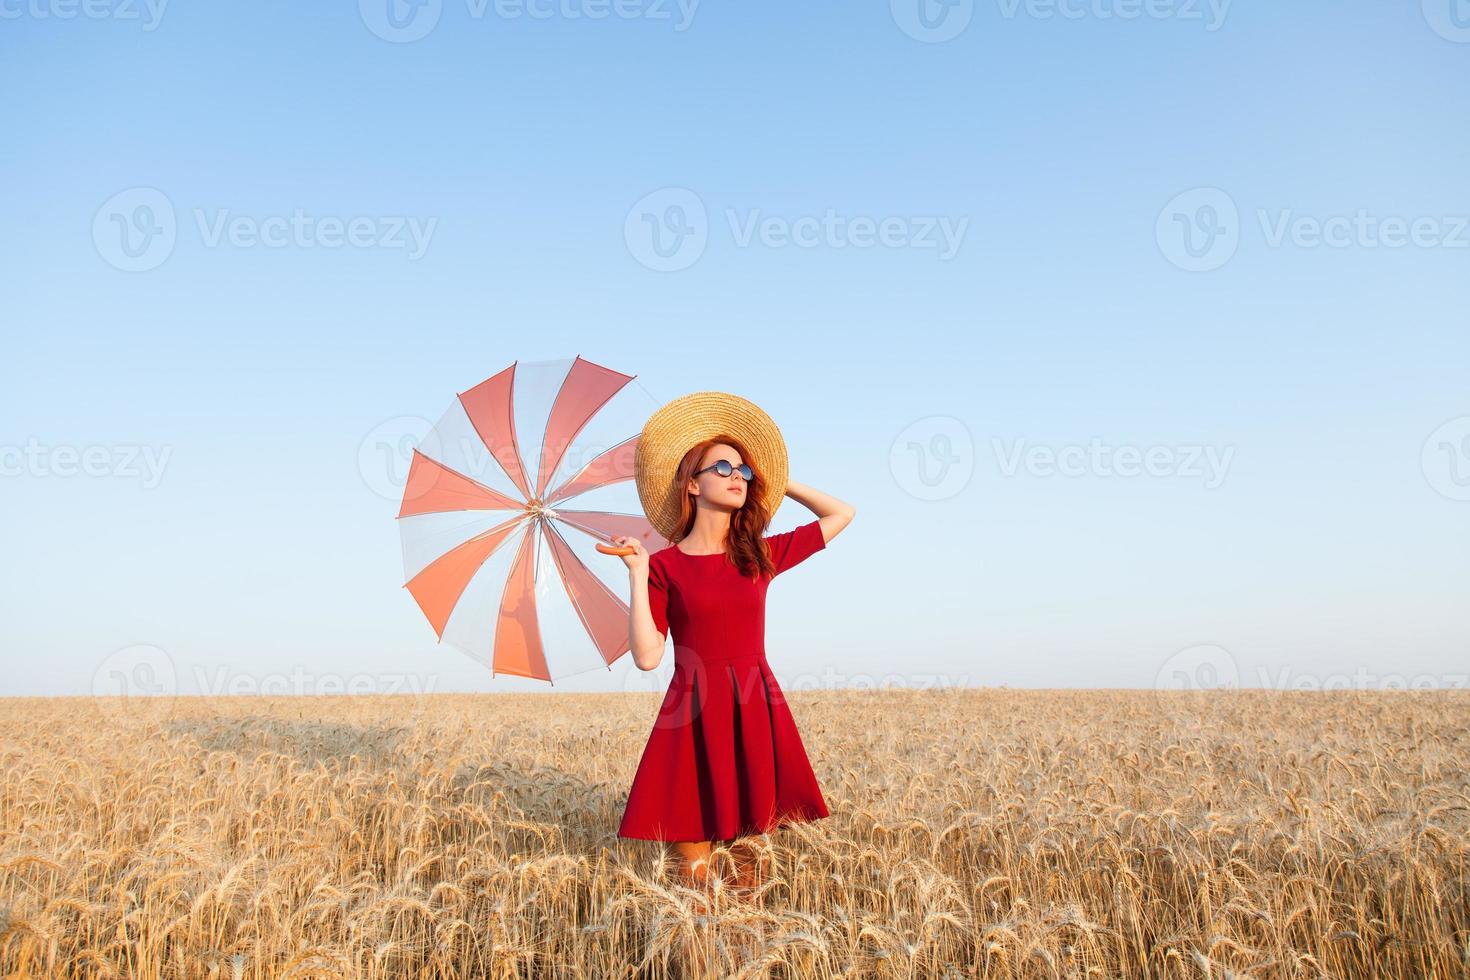 garota de vestido vermelho com guarda-chuva e chapéu foto